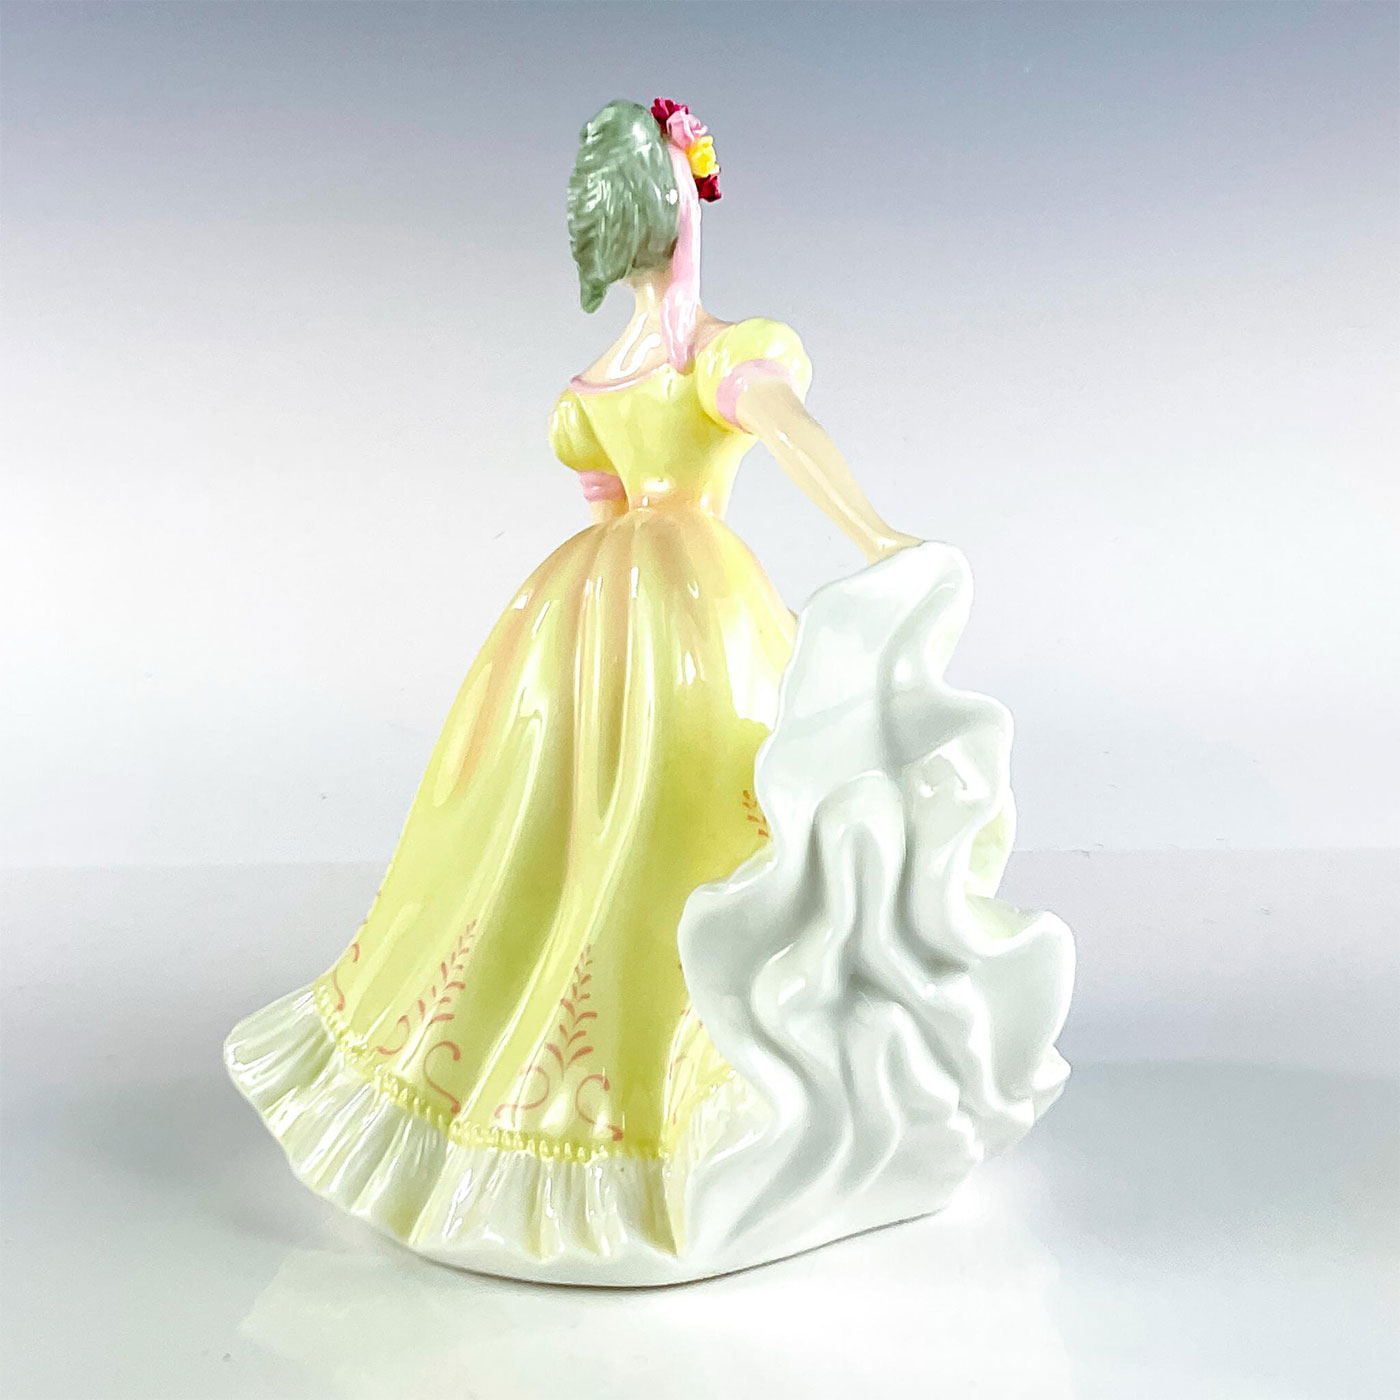 Ninette HN4717 - Royal Doulton Figurine - Image 2 of 3